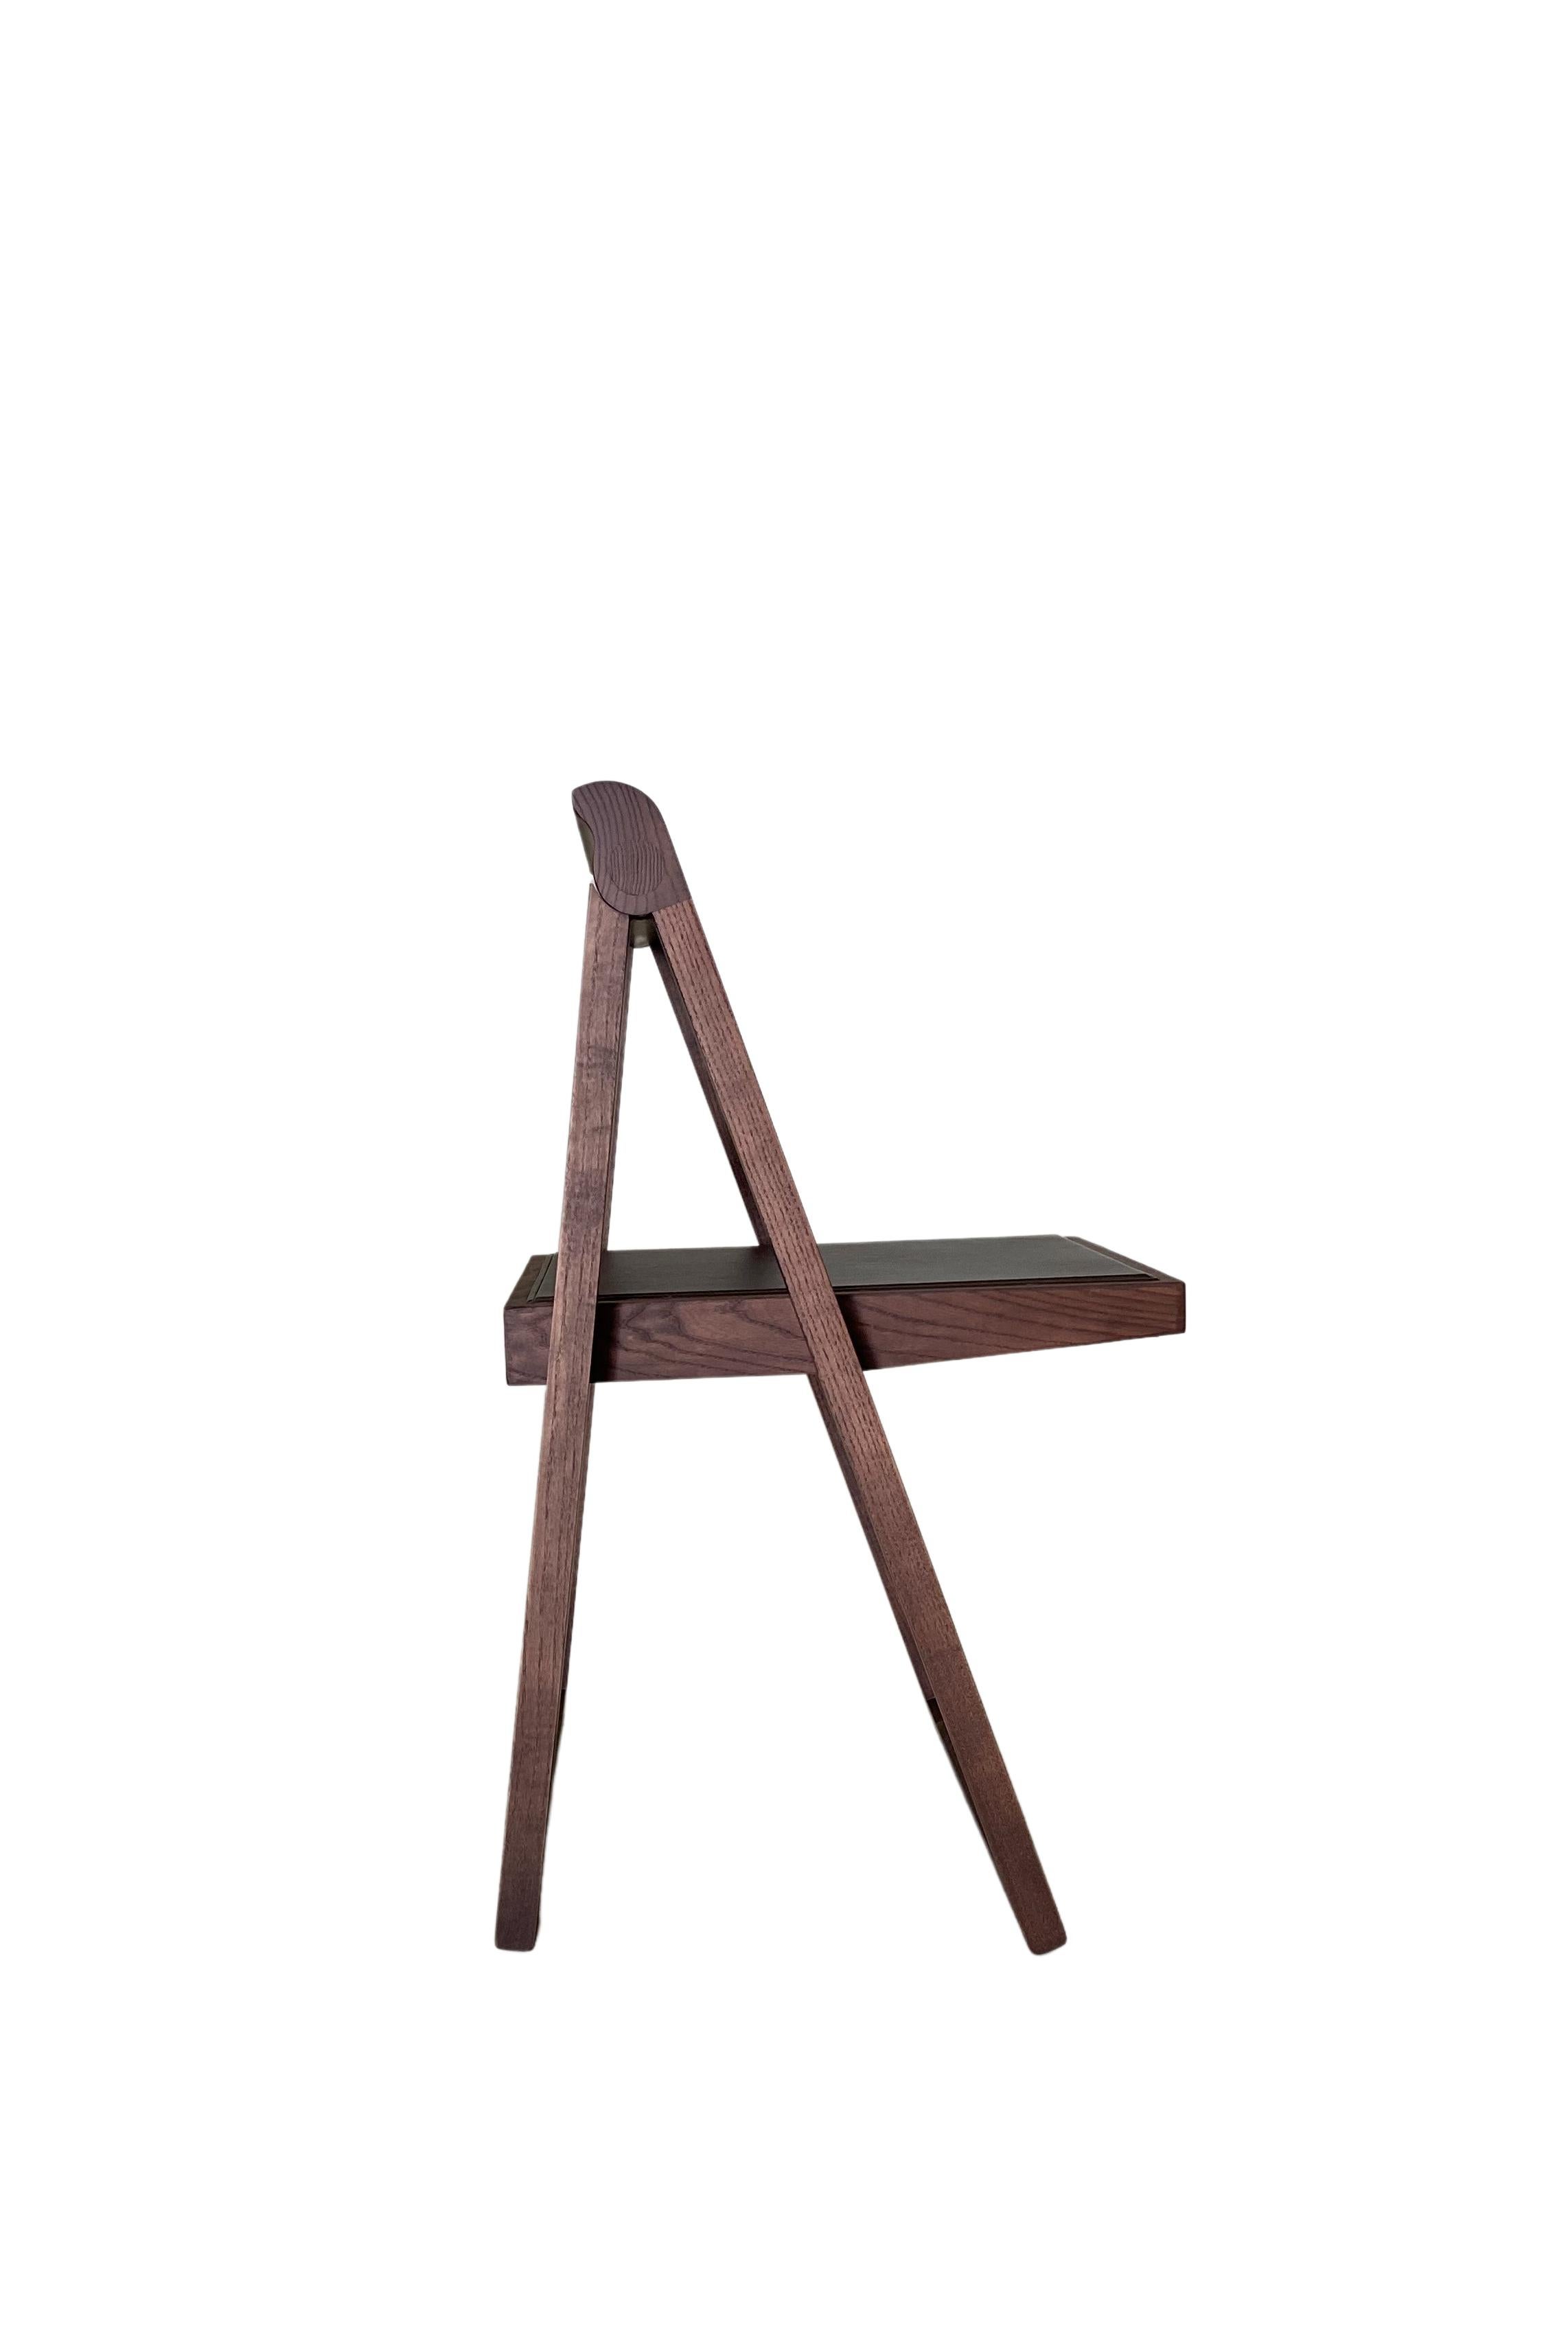 Le Ciak est l'union parfaite de la fonctionnalité et du design. Une chaise pliante pratique et moderne, ses dimensions lui permettent de s'adapter à tous les intérieurs.
Siège, recouvert de tissu, de velours ou de cuir
Nouveau fabriqué sur